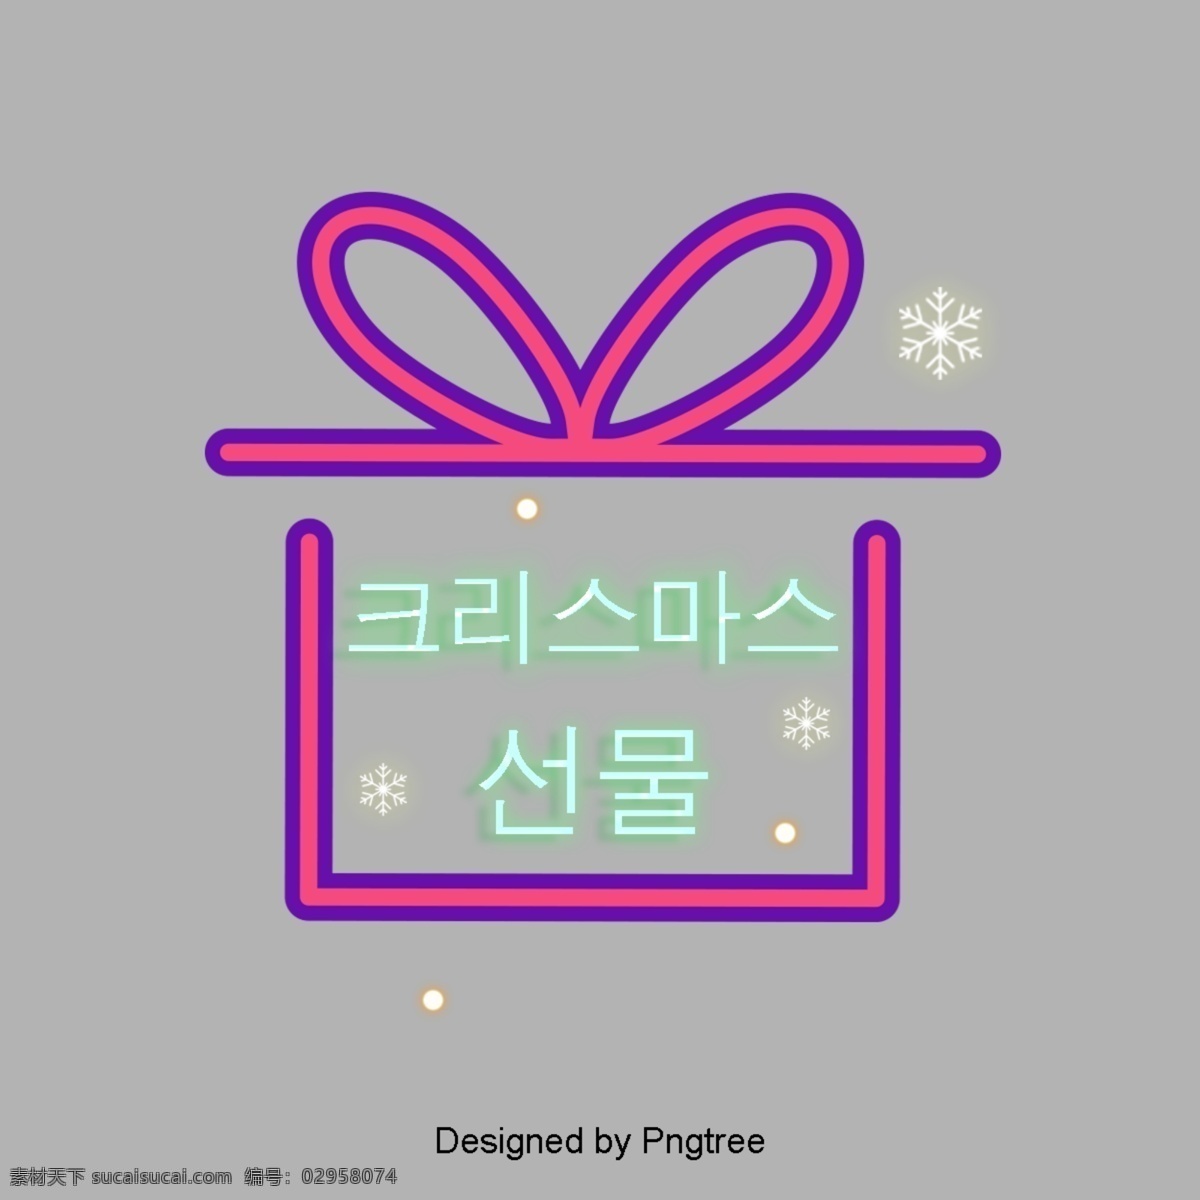 韩国 简单 礼品盒 圣诞 灯 效果 现场 字体 圣诞礼物 场景的效果 我们 霓虹灯 垂直 条纹 雪花 关于 场景 元素 减少字体